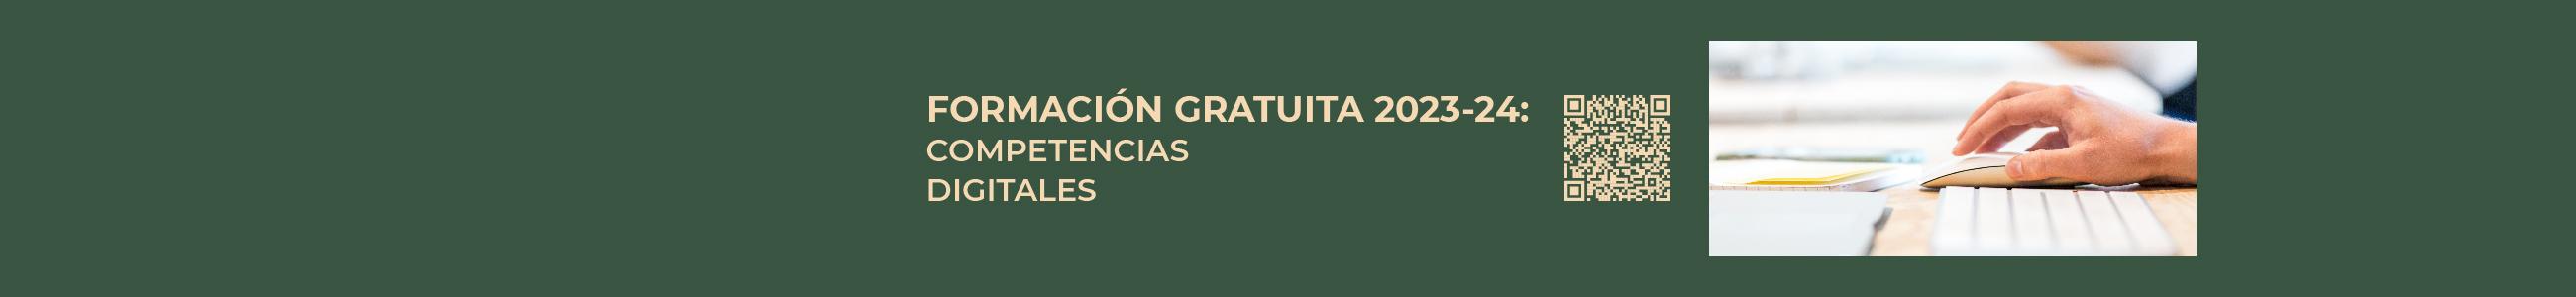 FORMACIÓN GRATUITA 2023/2024: COMPETENCIAS DIGITALES